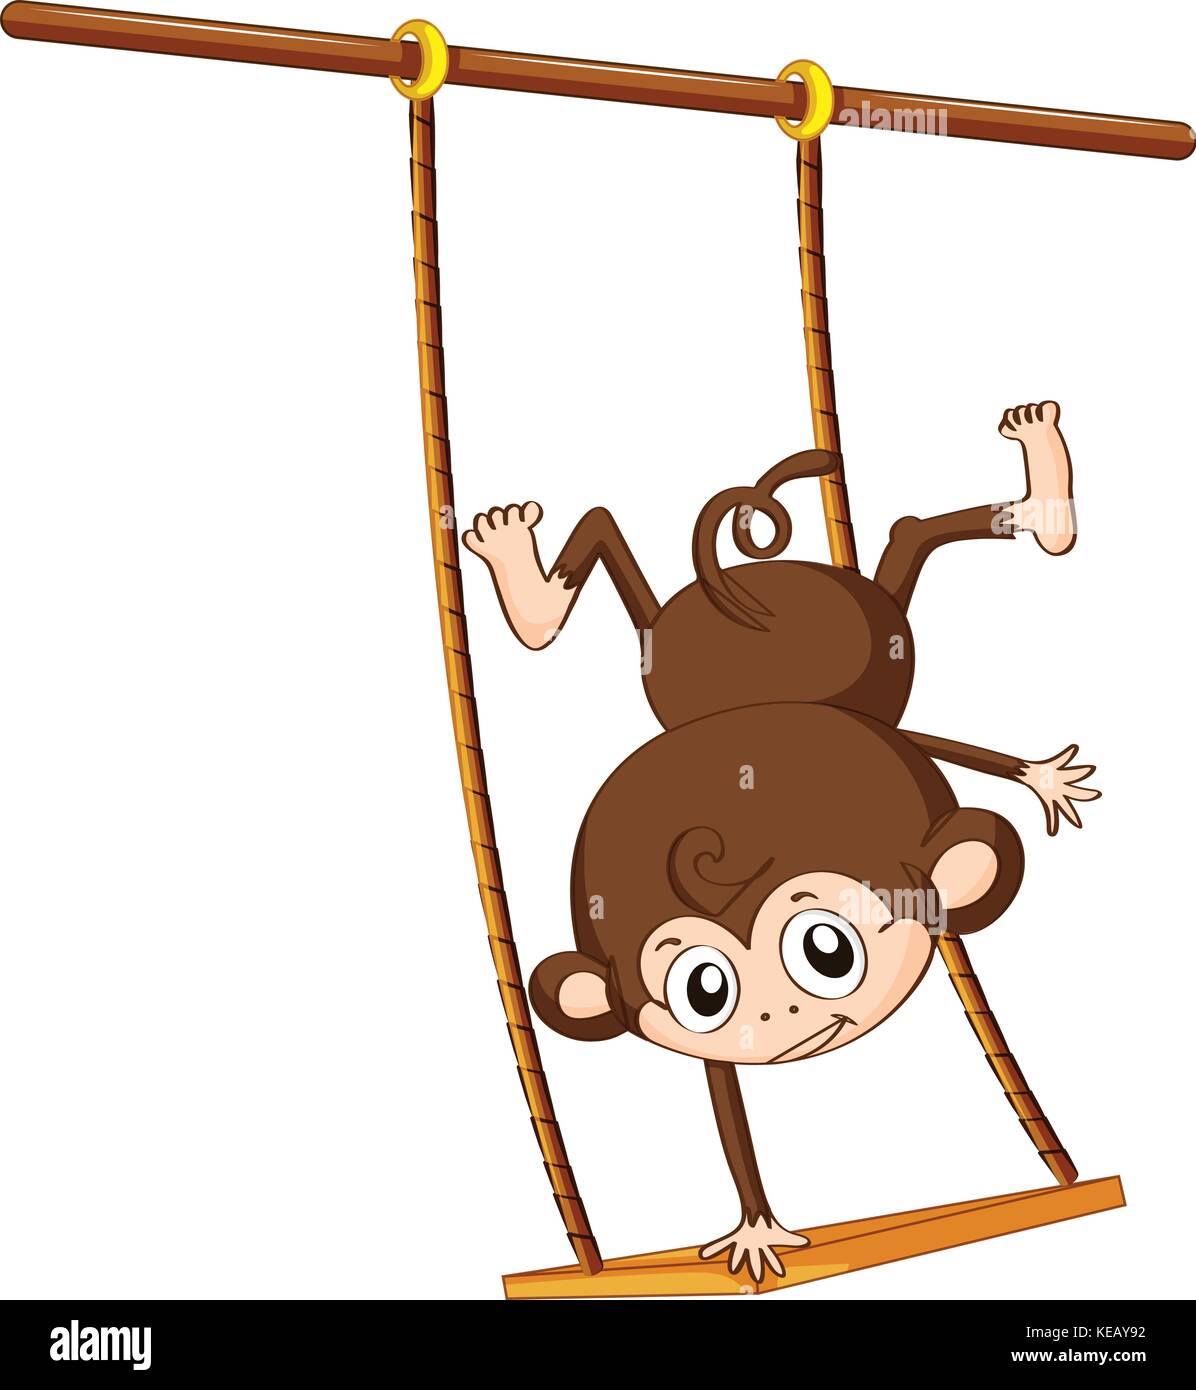 Abbildung: Ein Affe spielen auf einer Schaukel Stock-Vektorgrafik - Alamy